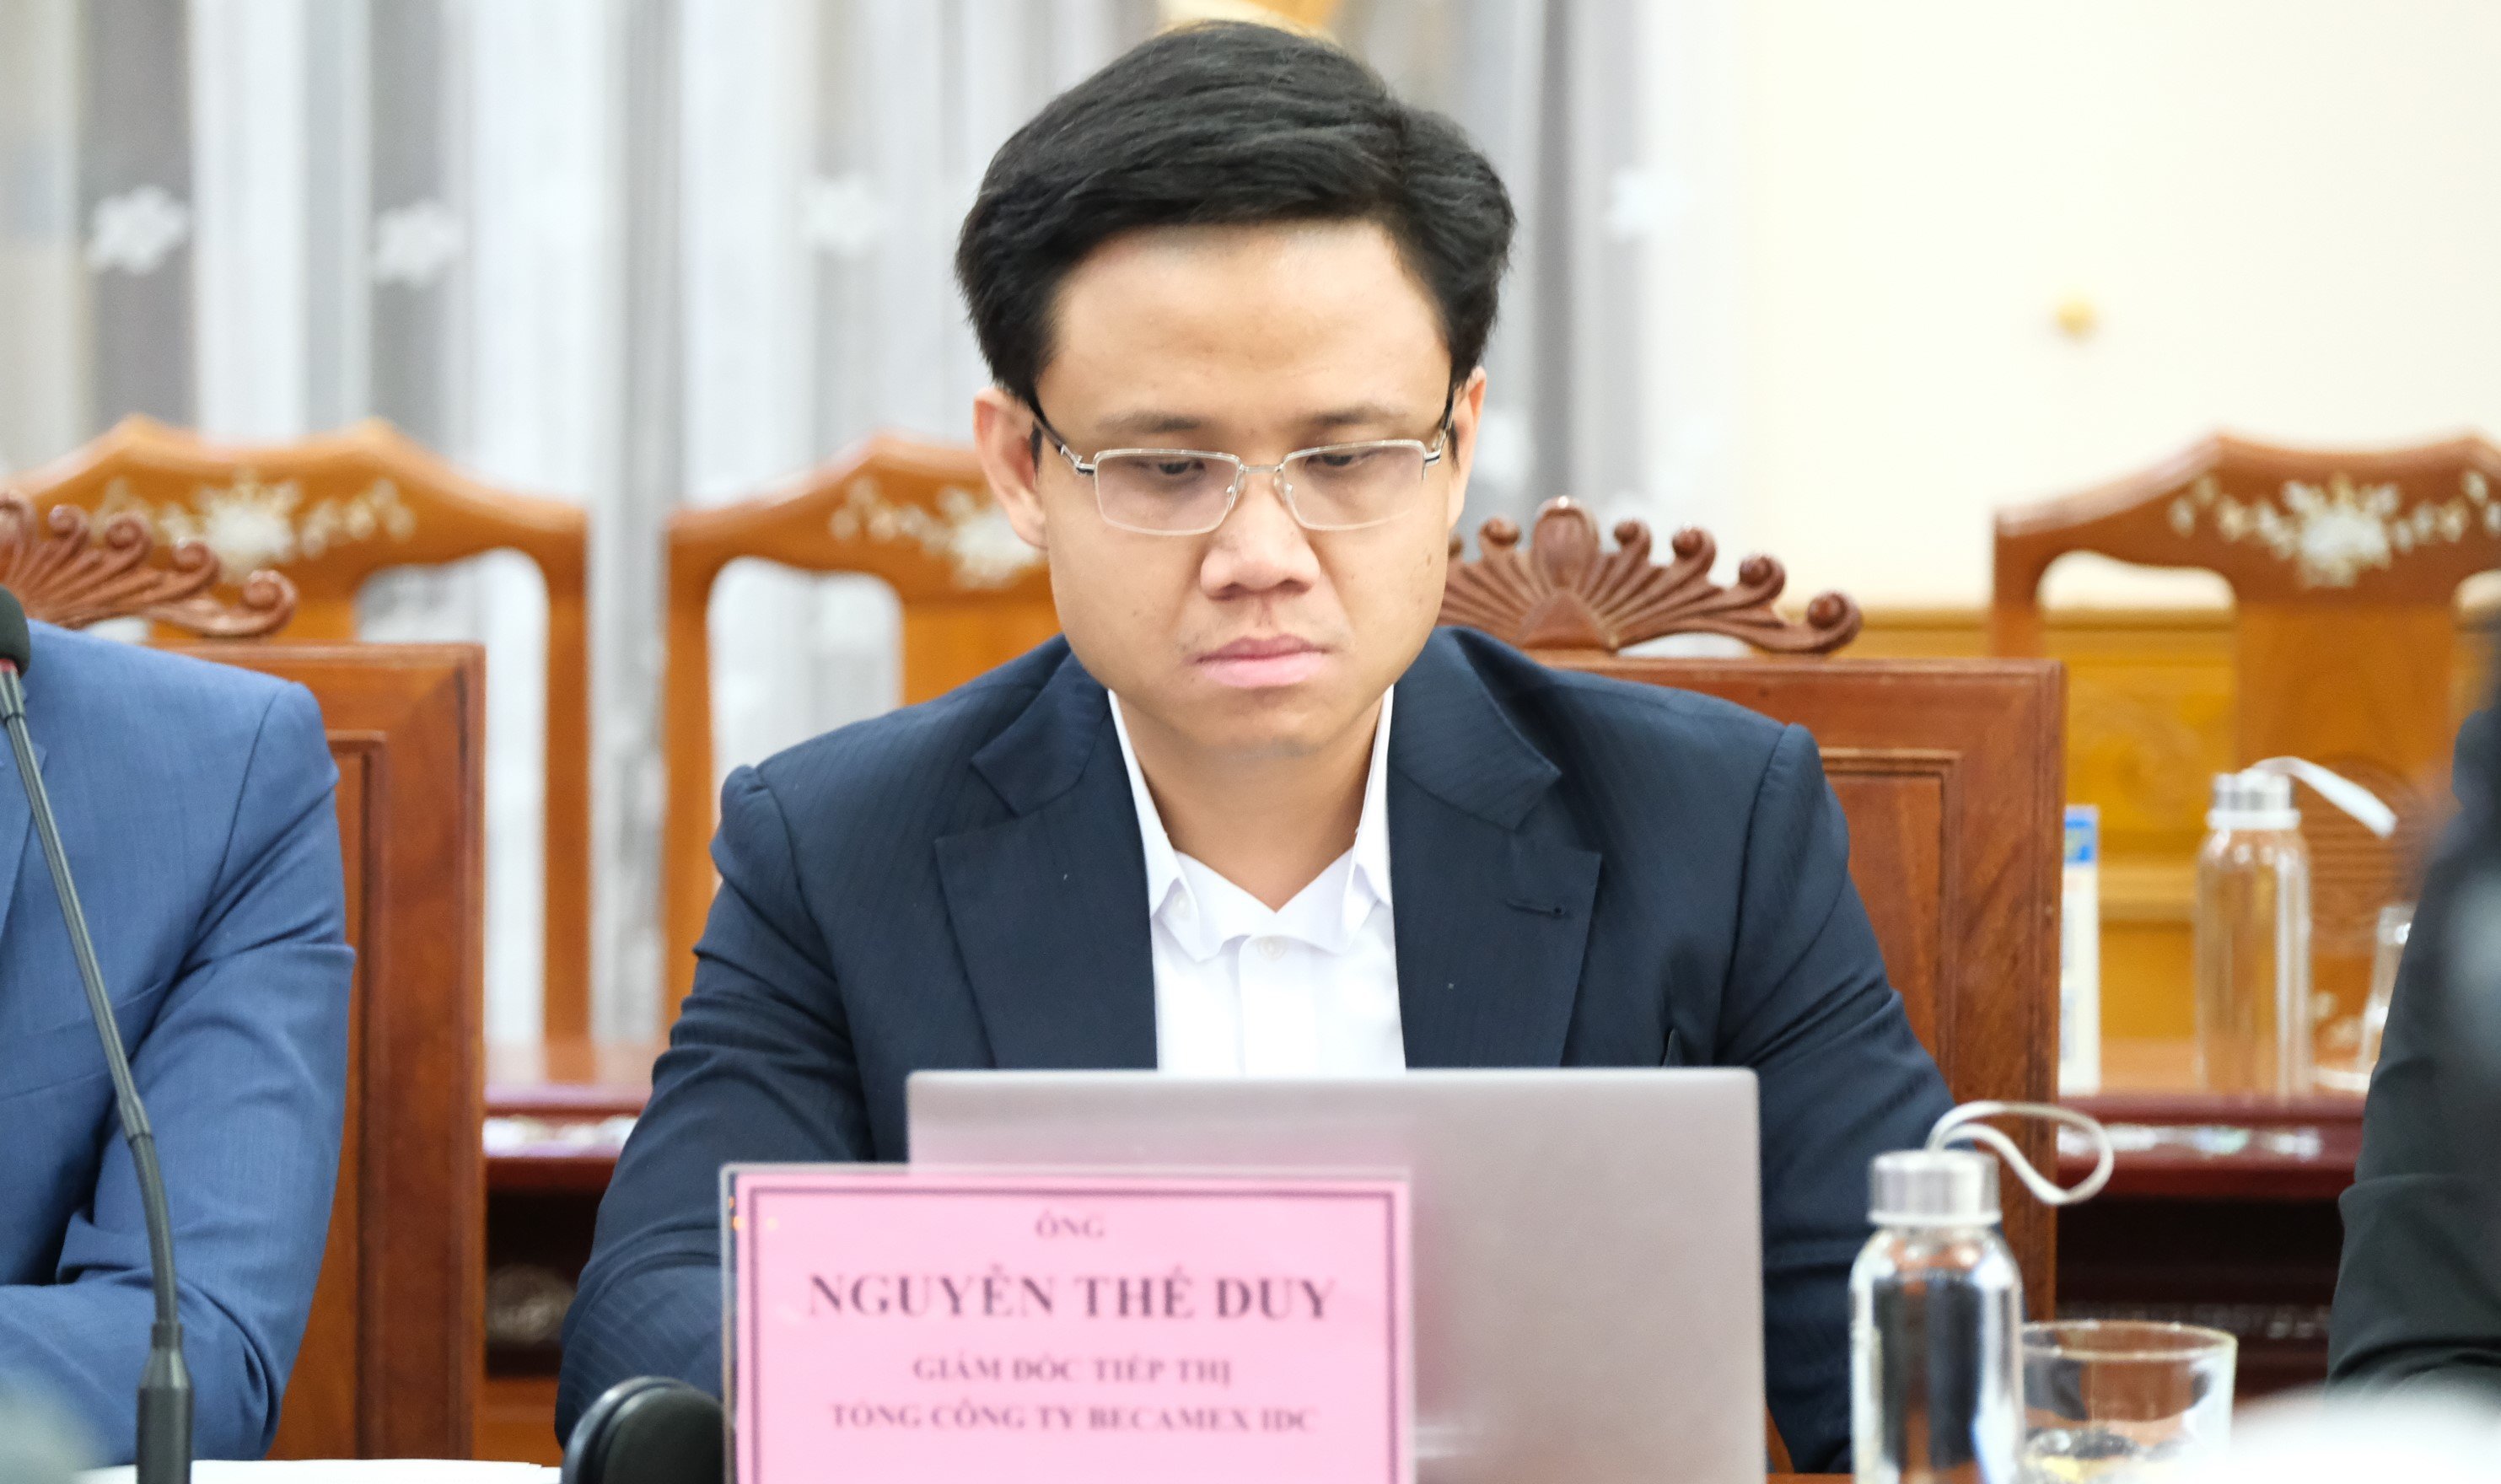 Ông Nguyễn Thế Duy – Giám đốc Tiếp thị Thị trường Tiếng Anh Tổng Công ty Becamex IDC.